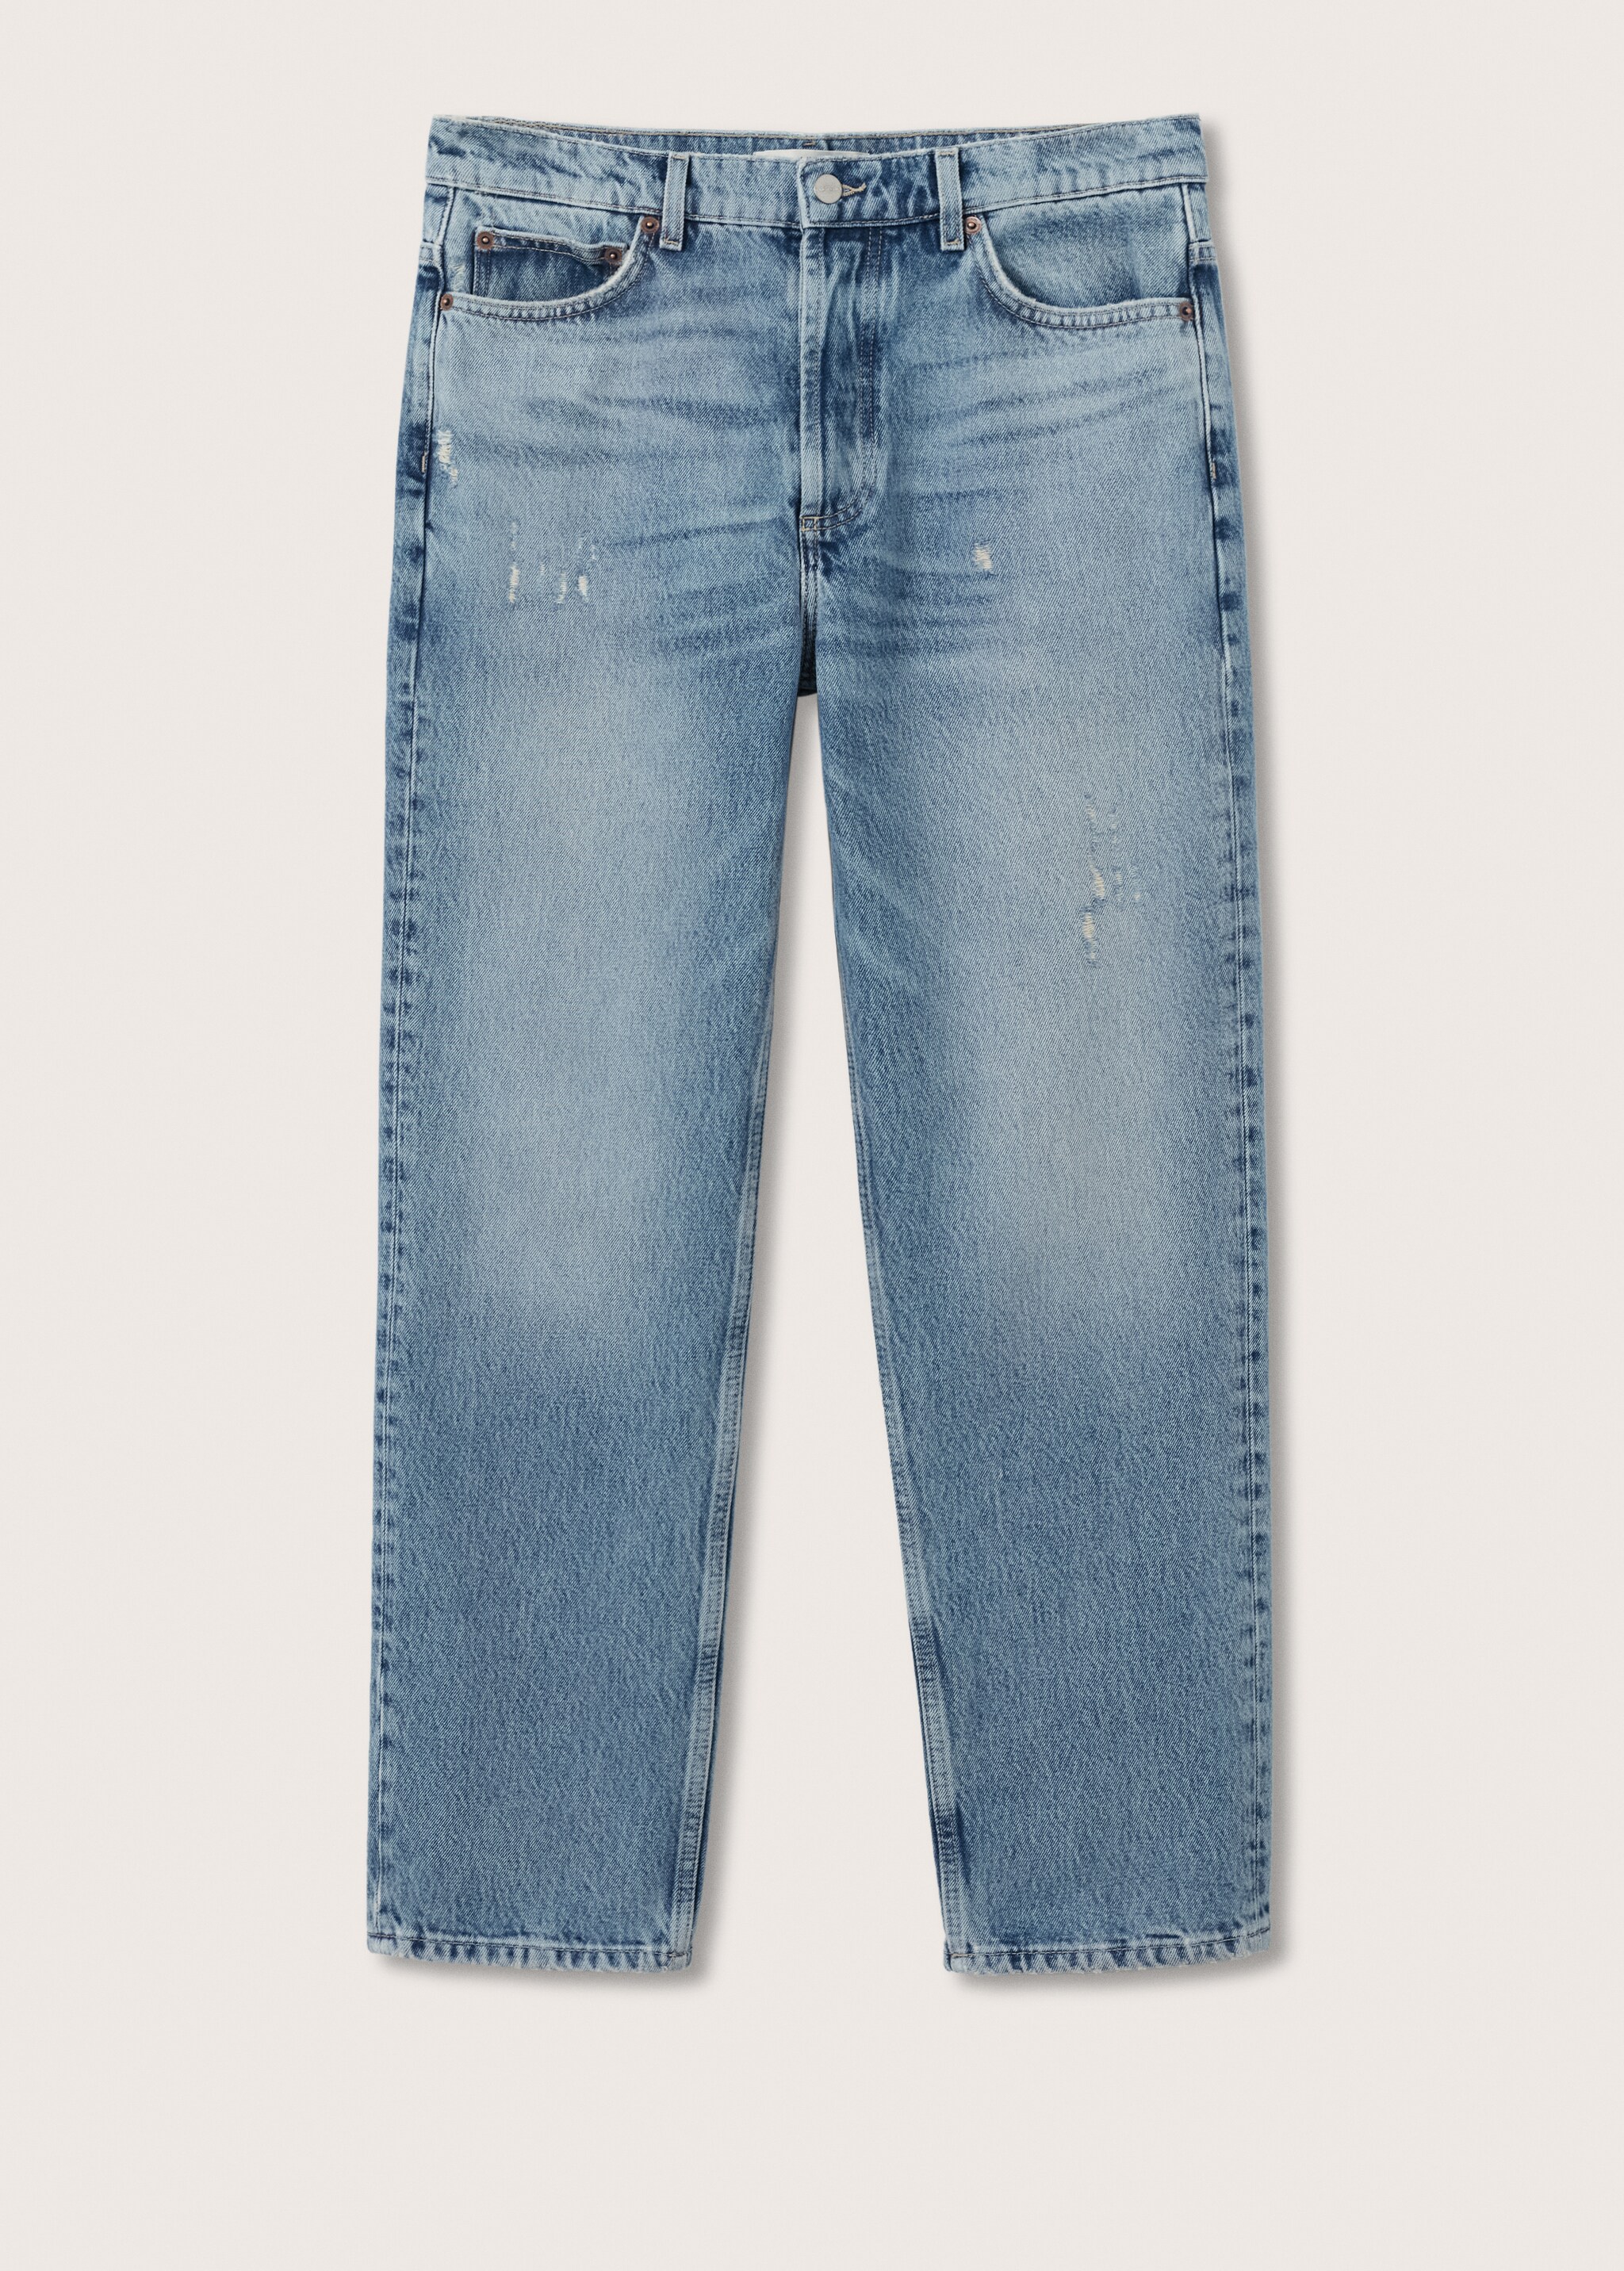 Jeans straight-fit rotos  - Artículo sin modelo